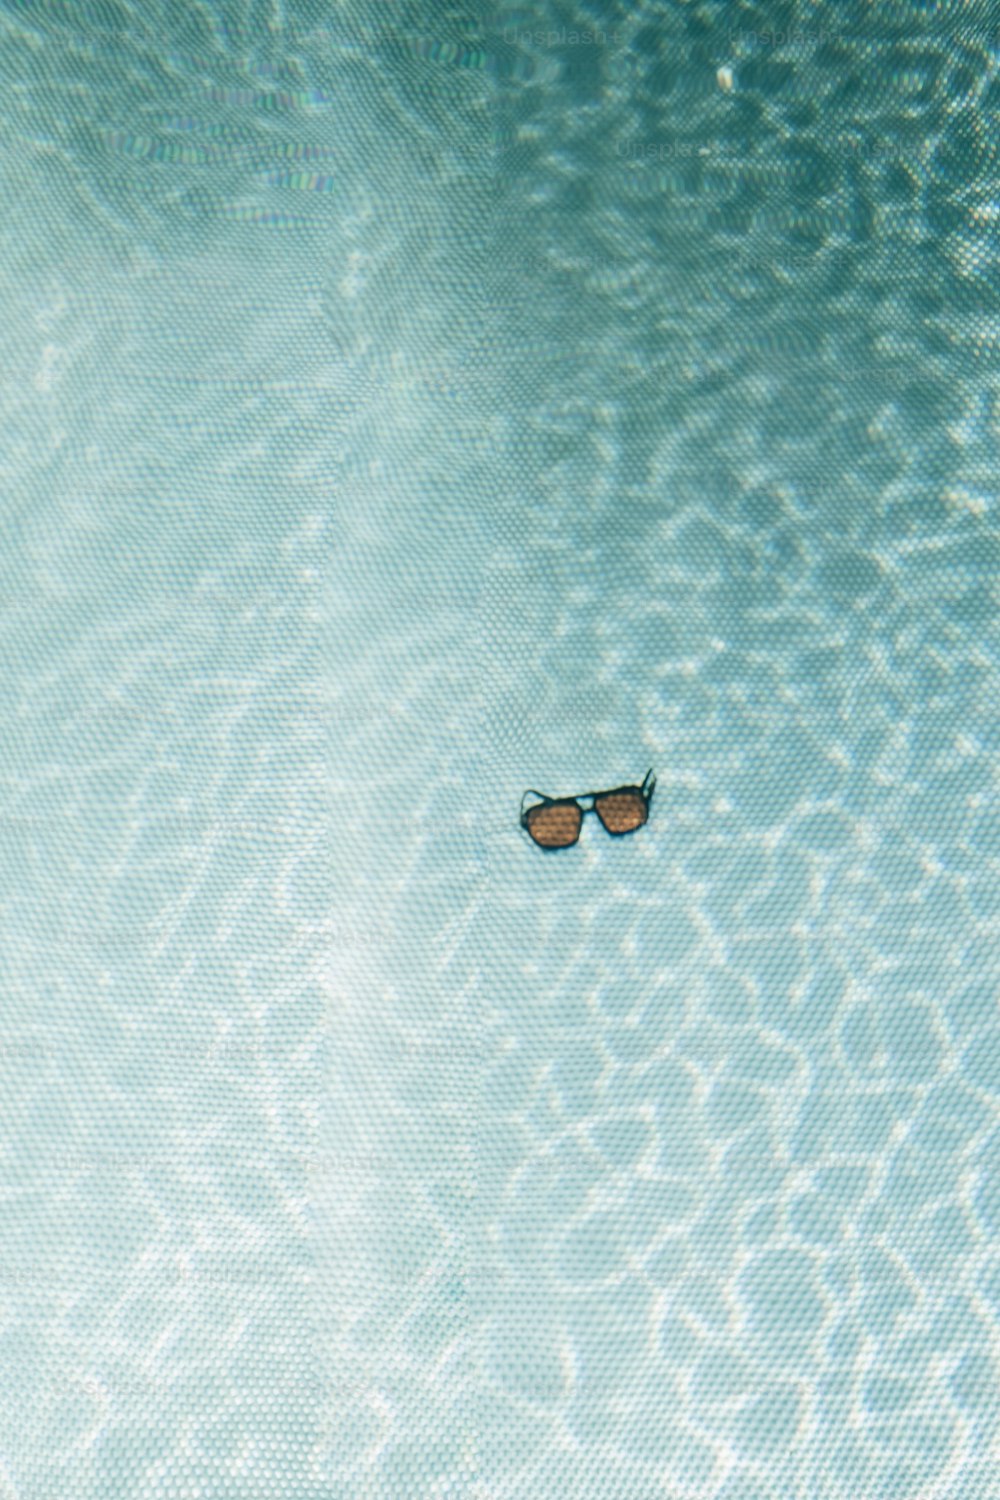 Un par de gafas de sol flotando en un charco de agua